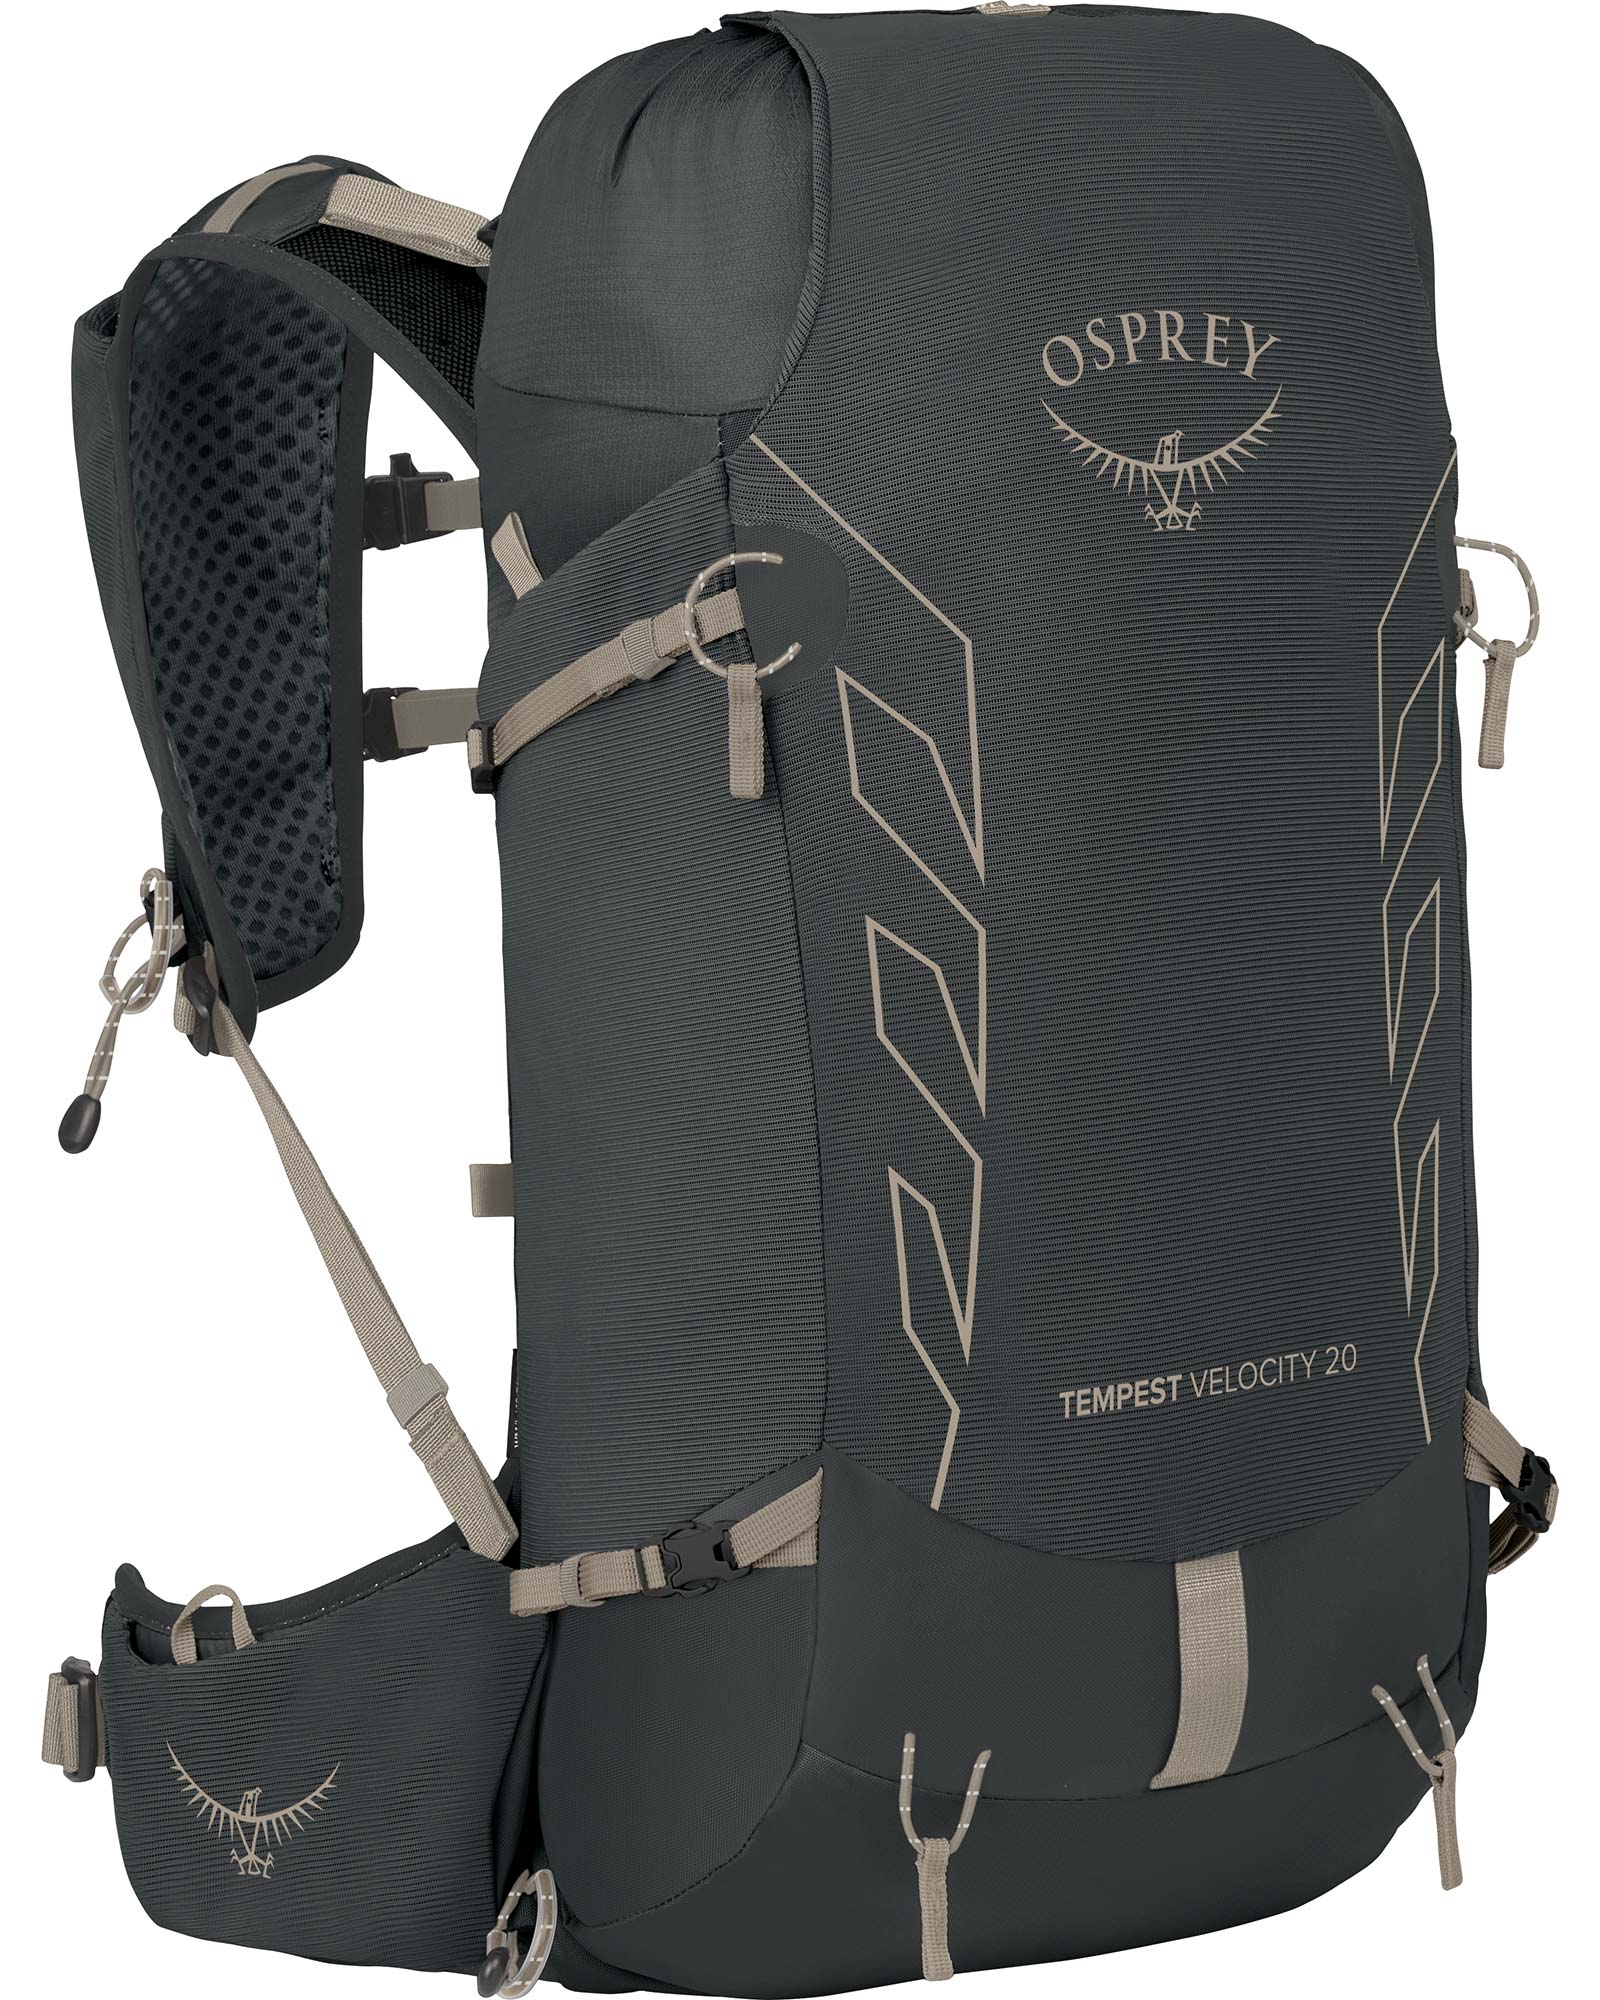 Osprey Tempest Velocity 20 Backpack